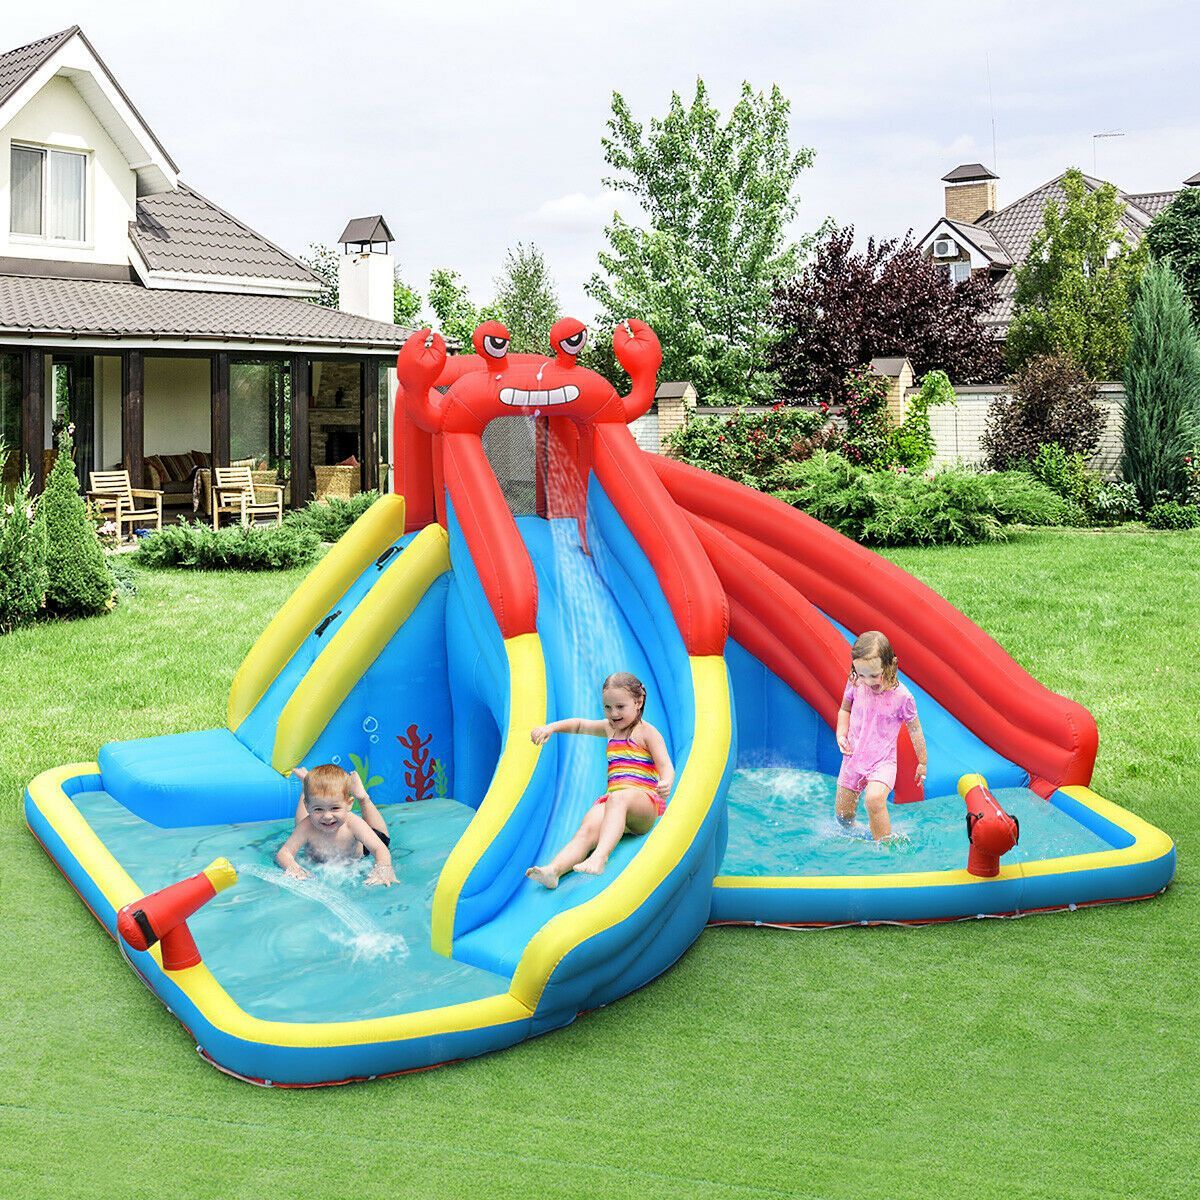 Costway Inflatable Water Slide Crab Dual Slide Bounce House Splash Pool W/ 950W Blower | Target